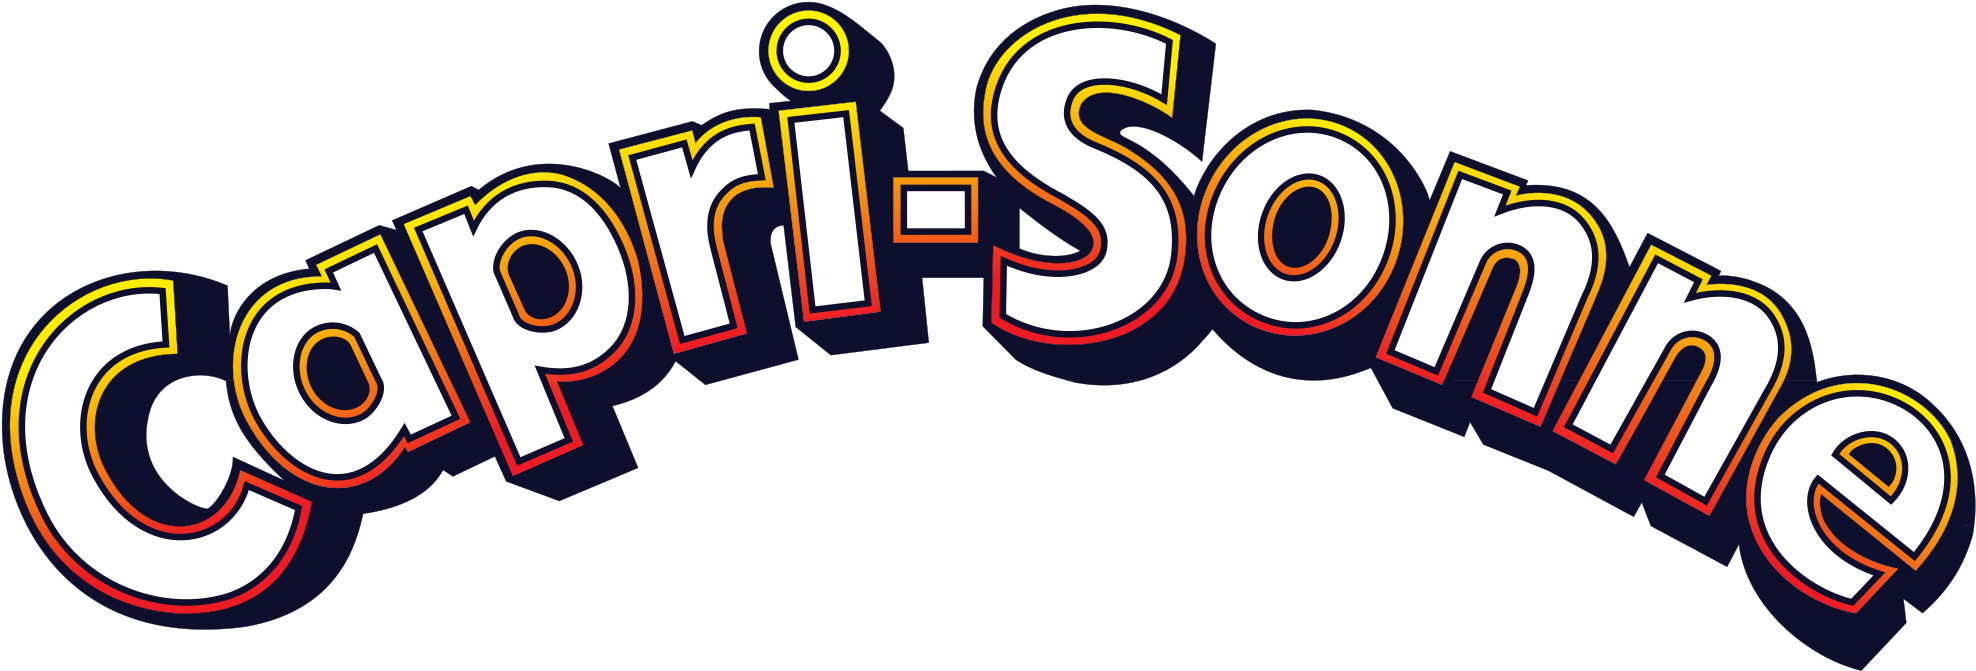 Capri Sonne Logo - Capri Sonne Logo Png (2000x694), Png Download